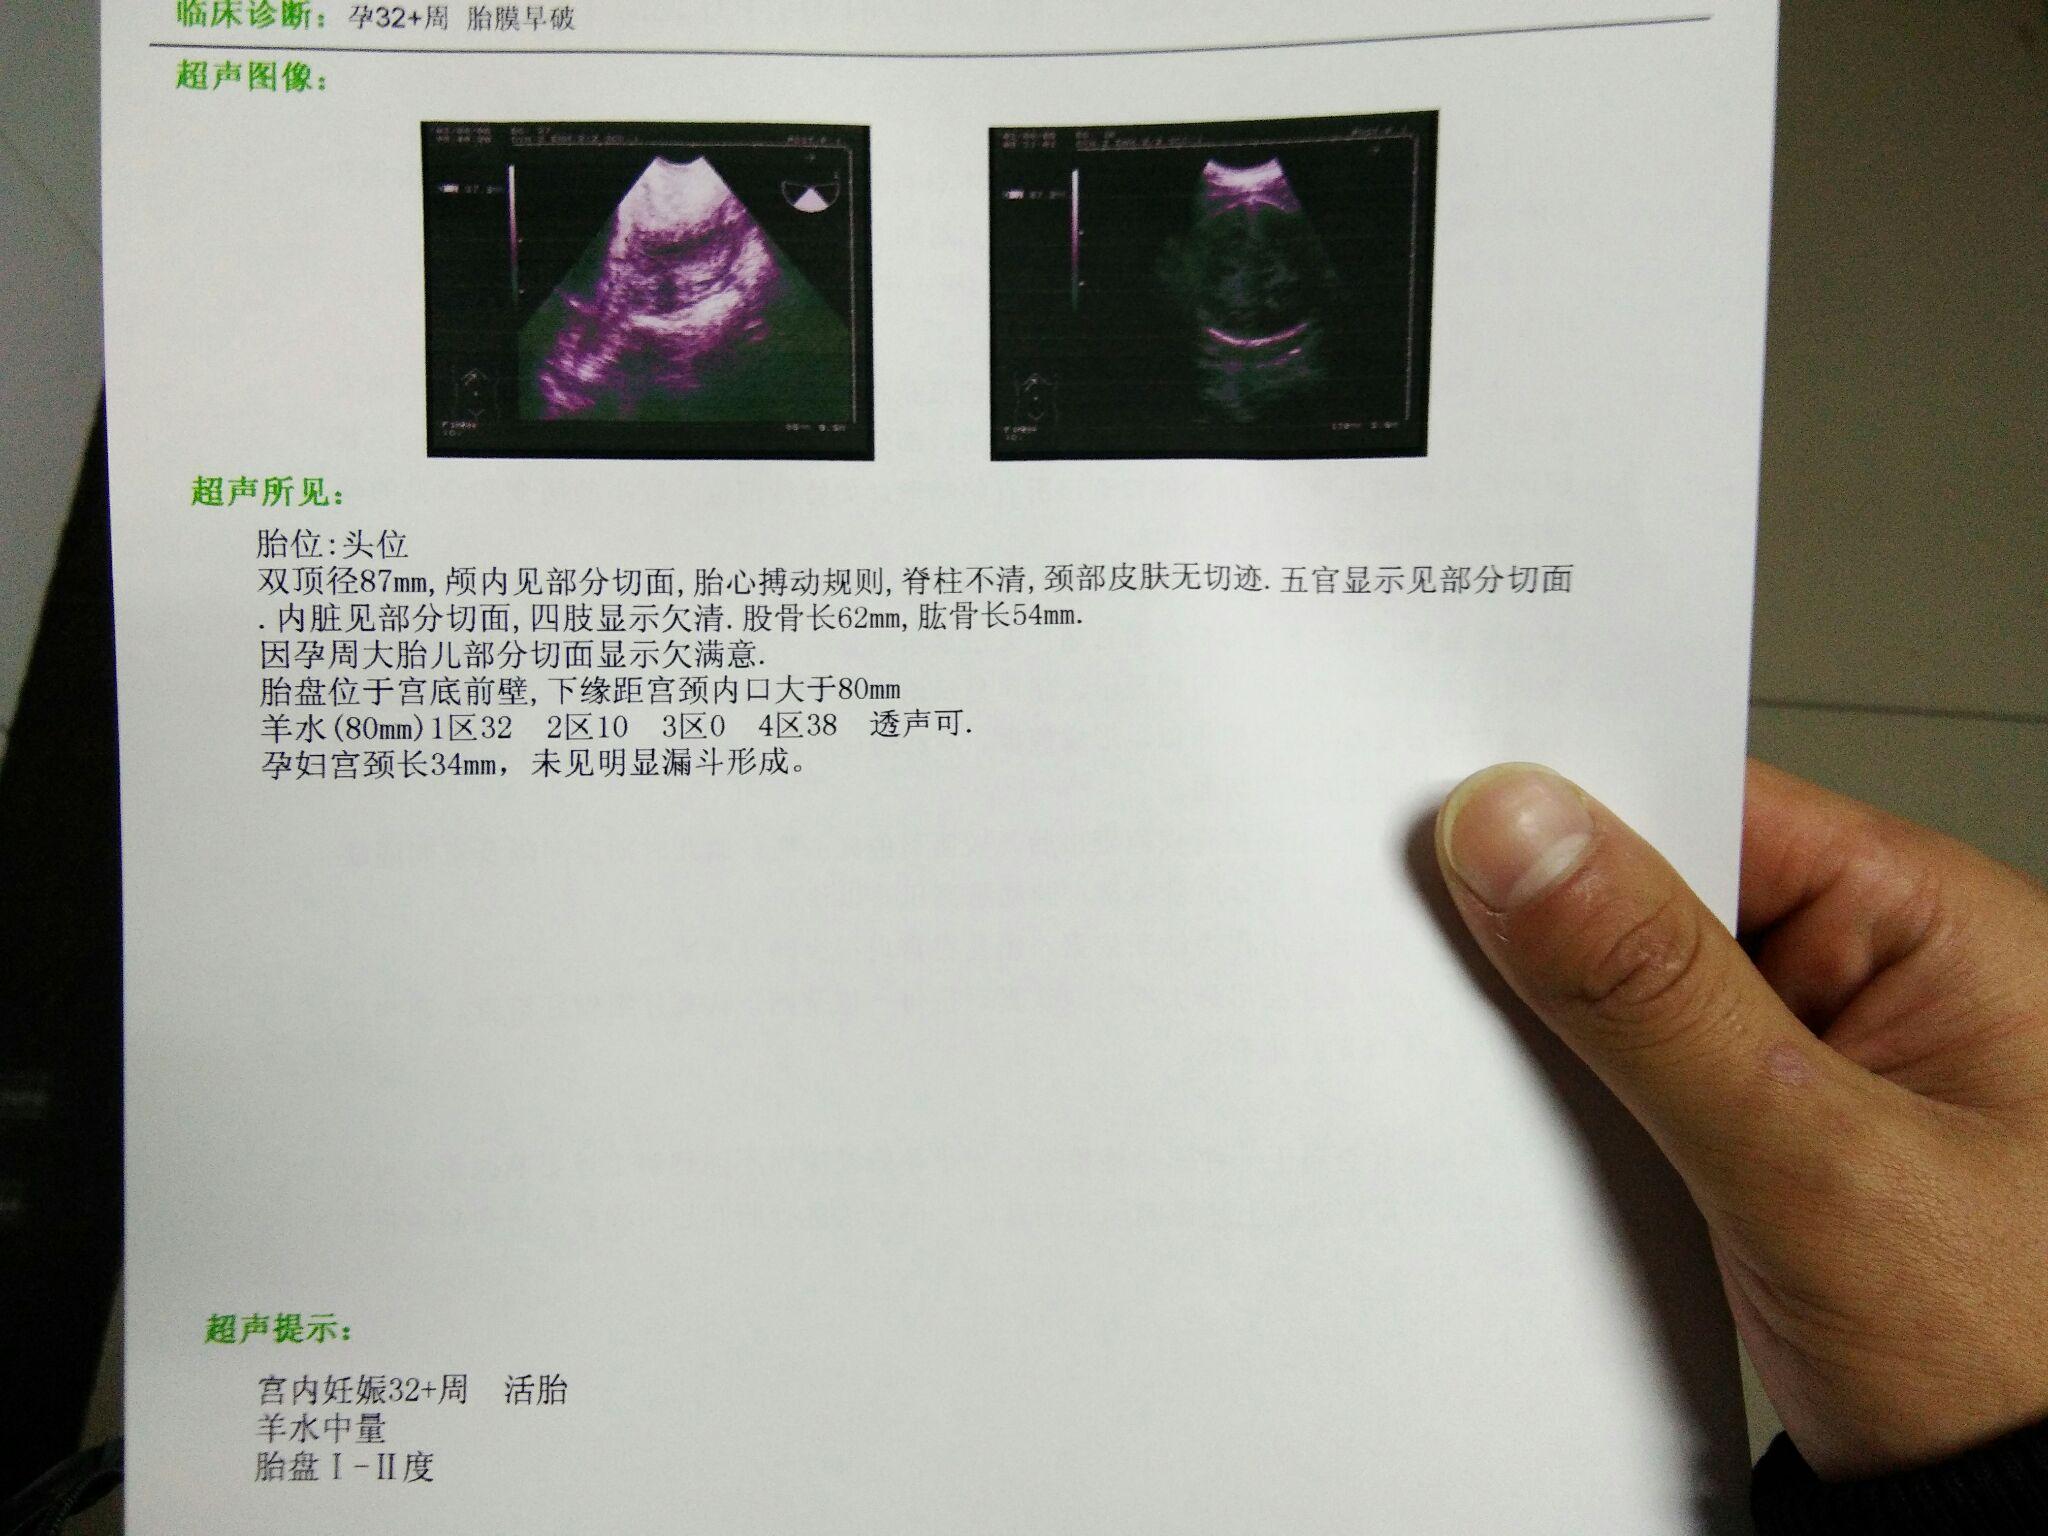 妇儿孕33周胎膜早破,现在在医院,刚做了B超,求